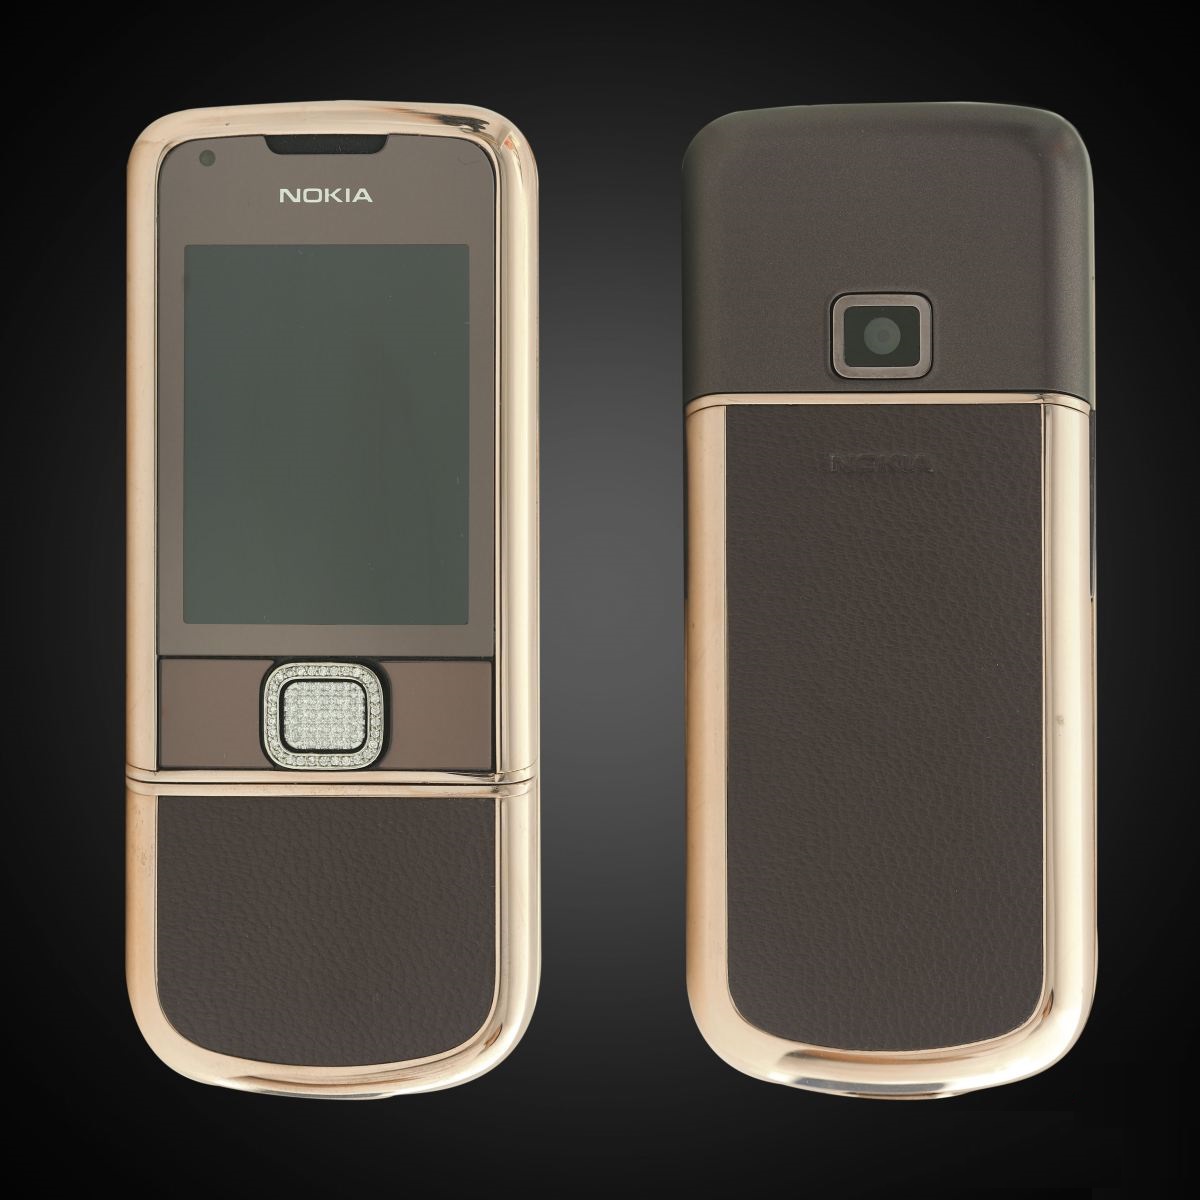 Nokia 8800E Rose Gold đính đá là sự kết hợp hoàn hảo giữa độ sang trọng và quyến rũ. Nếu bạn muốn tìm một chiếc điện thoại đẳng cấp và độc đáo, hãy xem ngay bức ảnh liên quan để cảm nhận thêm vẻ đẹp tinh tế của nó.